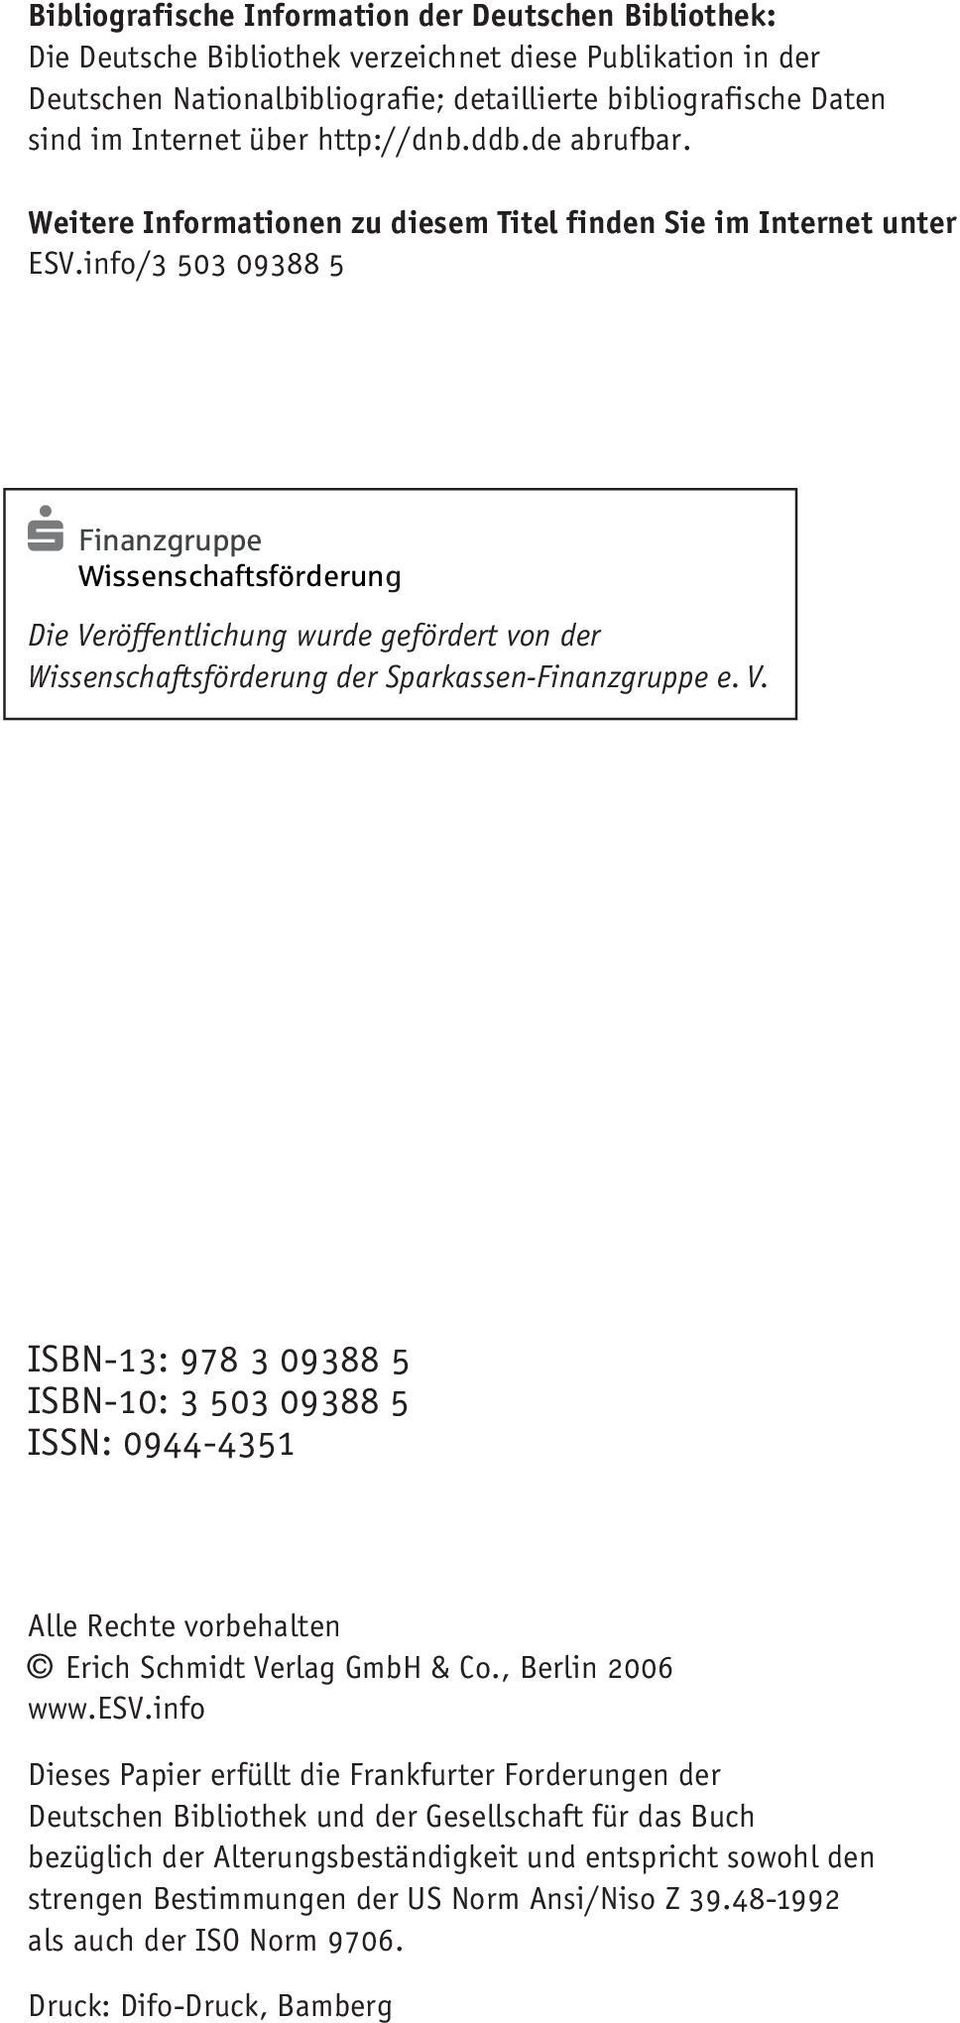 info/3 503 09388 5 Finanzgruppe Wissenschaftsförderung Die Veröffentlichung wurde gefördert von der Wissenschaftsförderung der Sparkassen-Finanzgruppe e. V. ISBN-13: 978 3 09388 5 ISBN-10: 3 503 09388 5 ISSN: 0944-4351 Alle Rechte vorbehalten Erich Schmidt Verlag GmbH & Co.